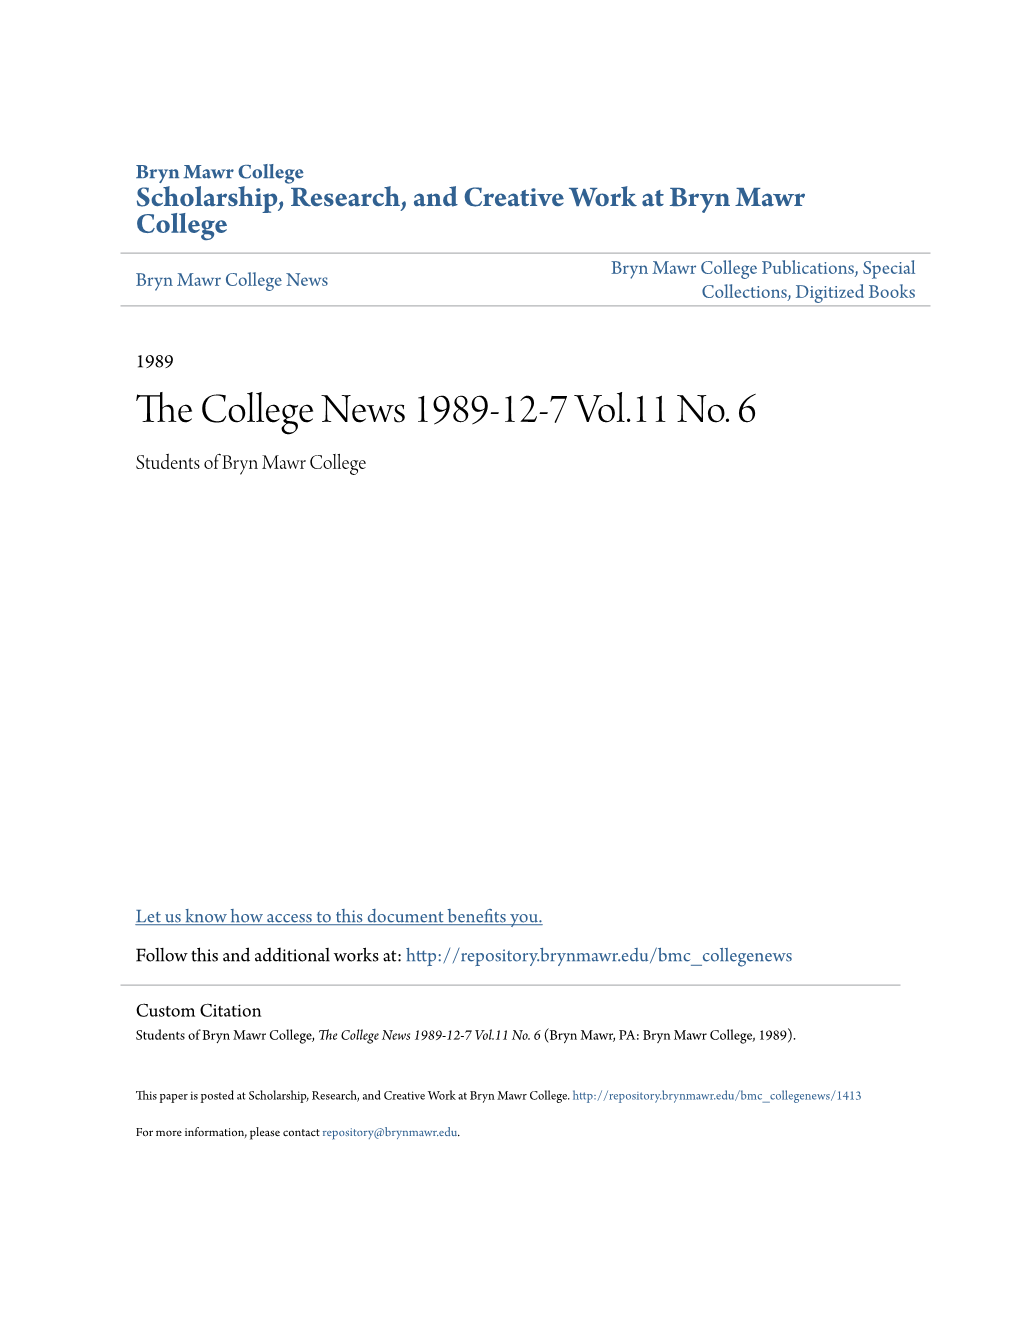 The College News 1989-12-7 Vol.11 No. 6 (Bryn Mawr, PA: Bryn Mawr College, 1989)